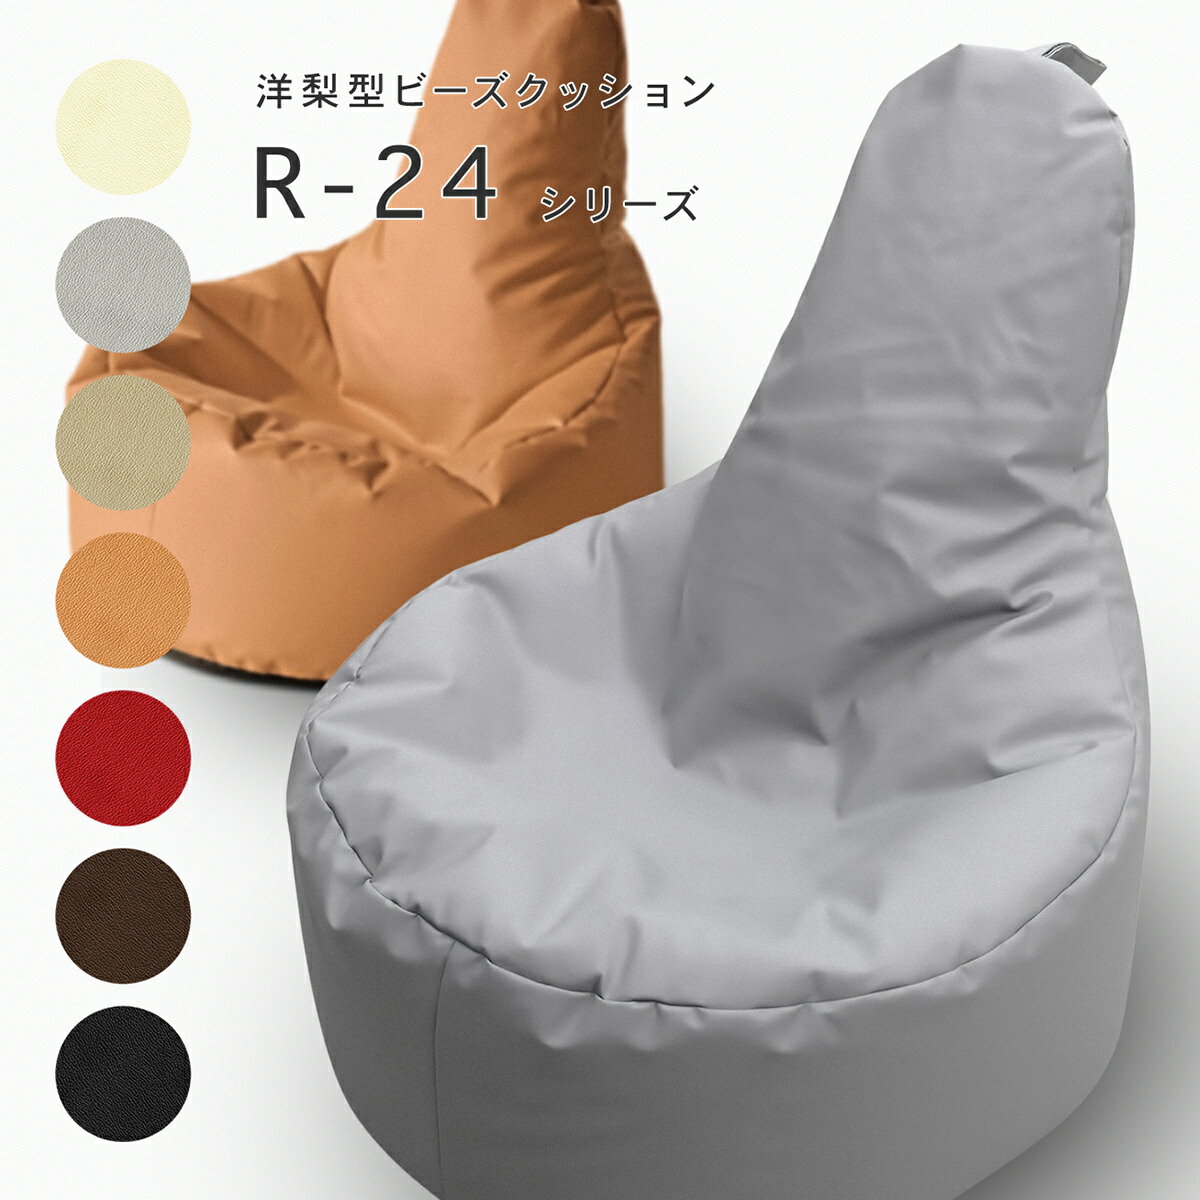 合皮の洋梨型ビーズクッション R-24 